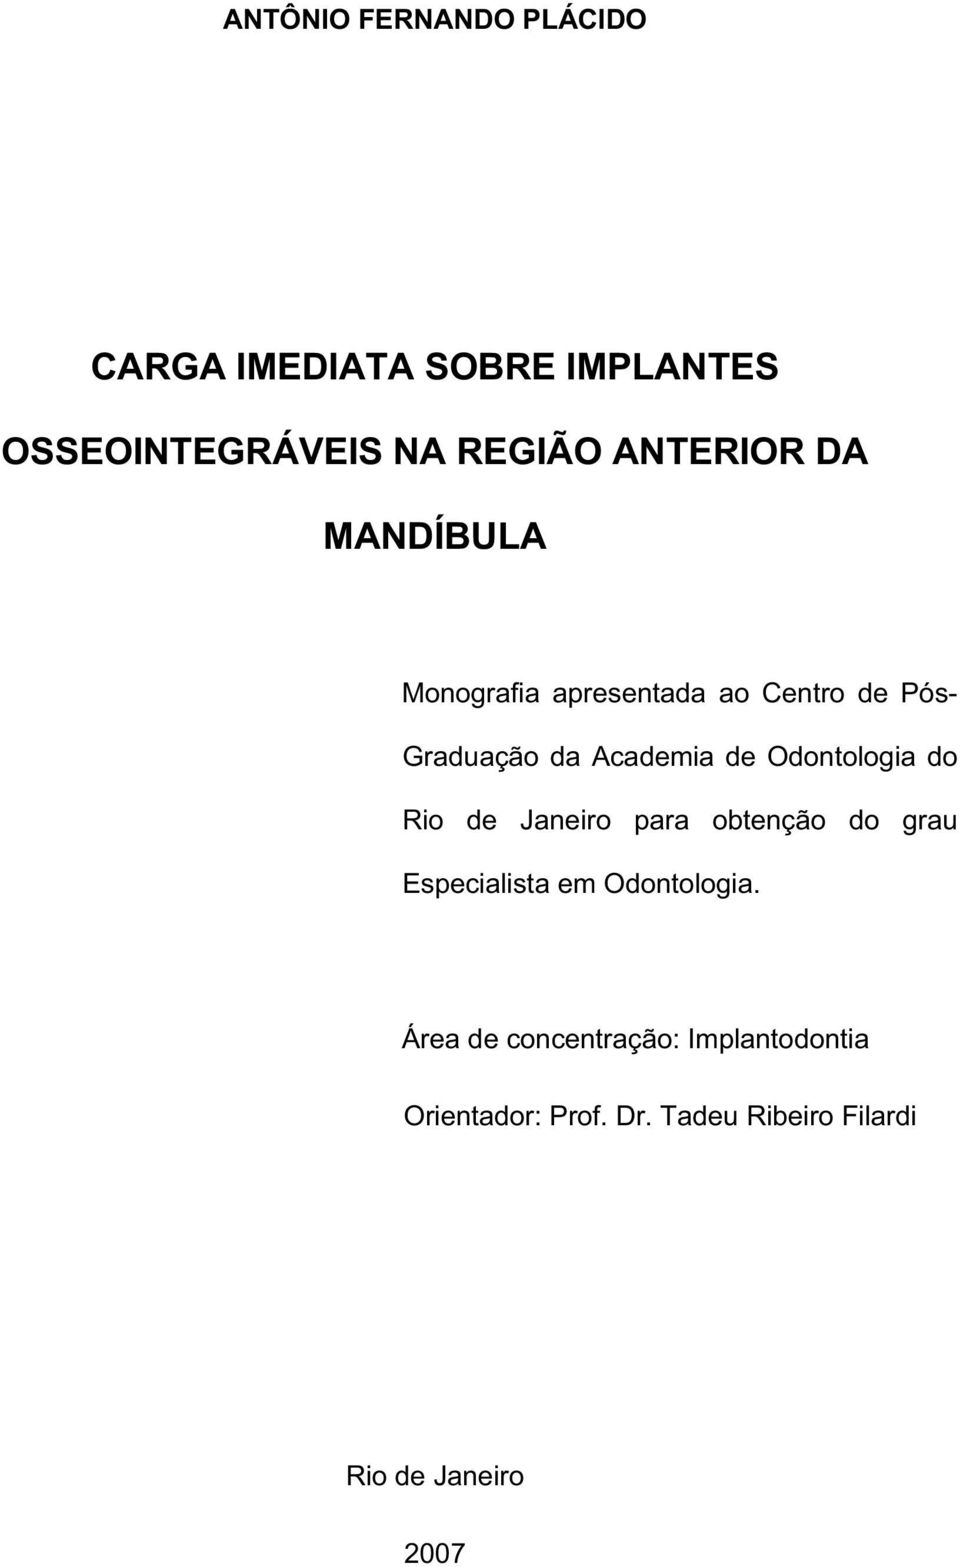 Odontologia do Rio de Janeiro para obtenção do grau Especialista em Odontologia.